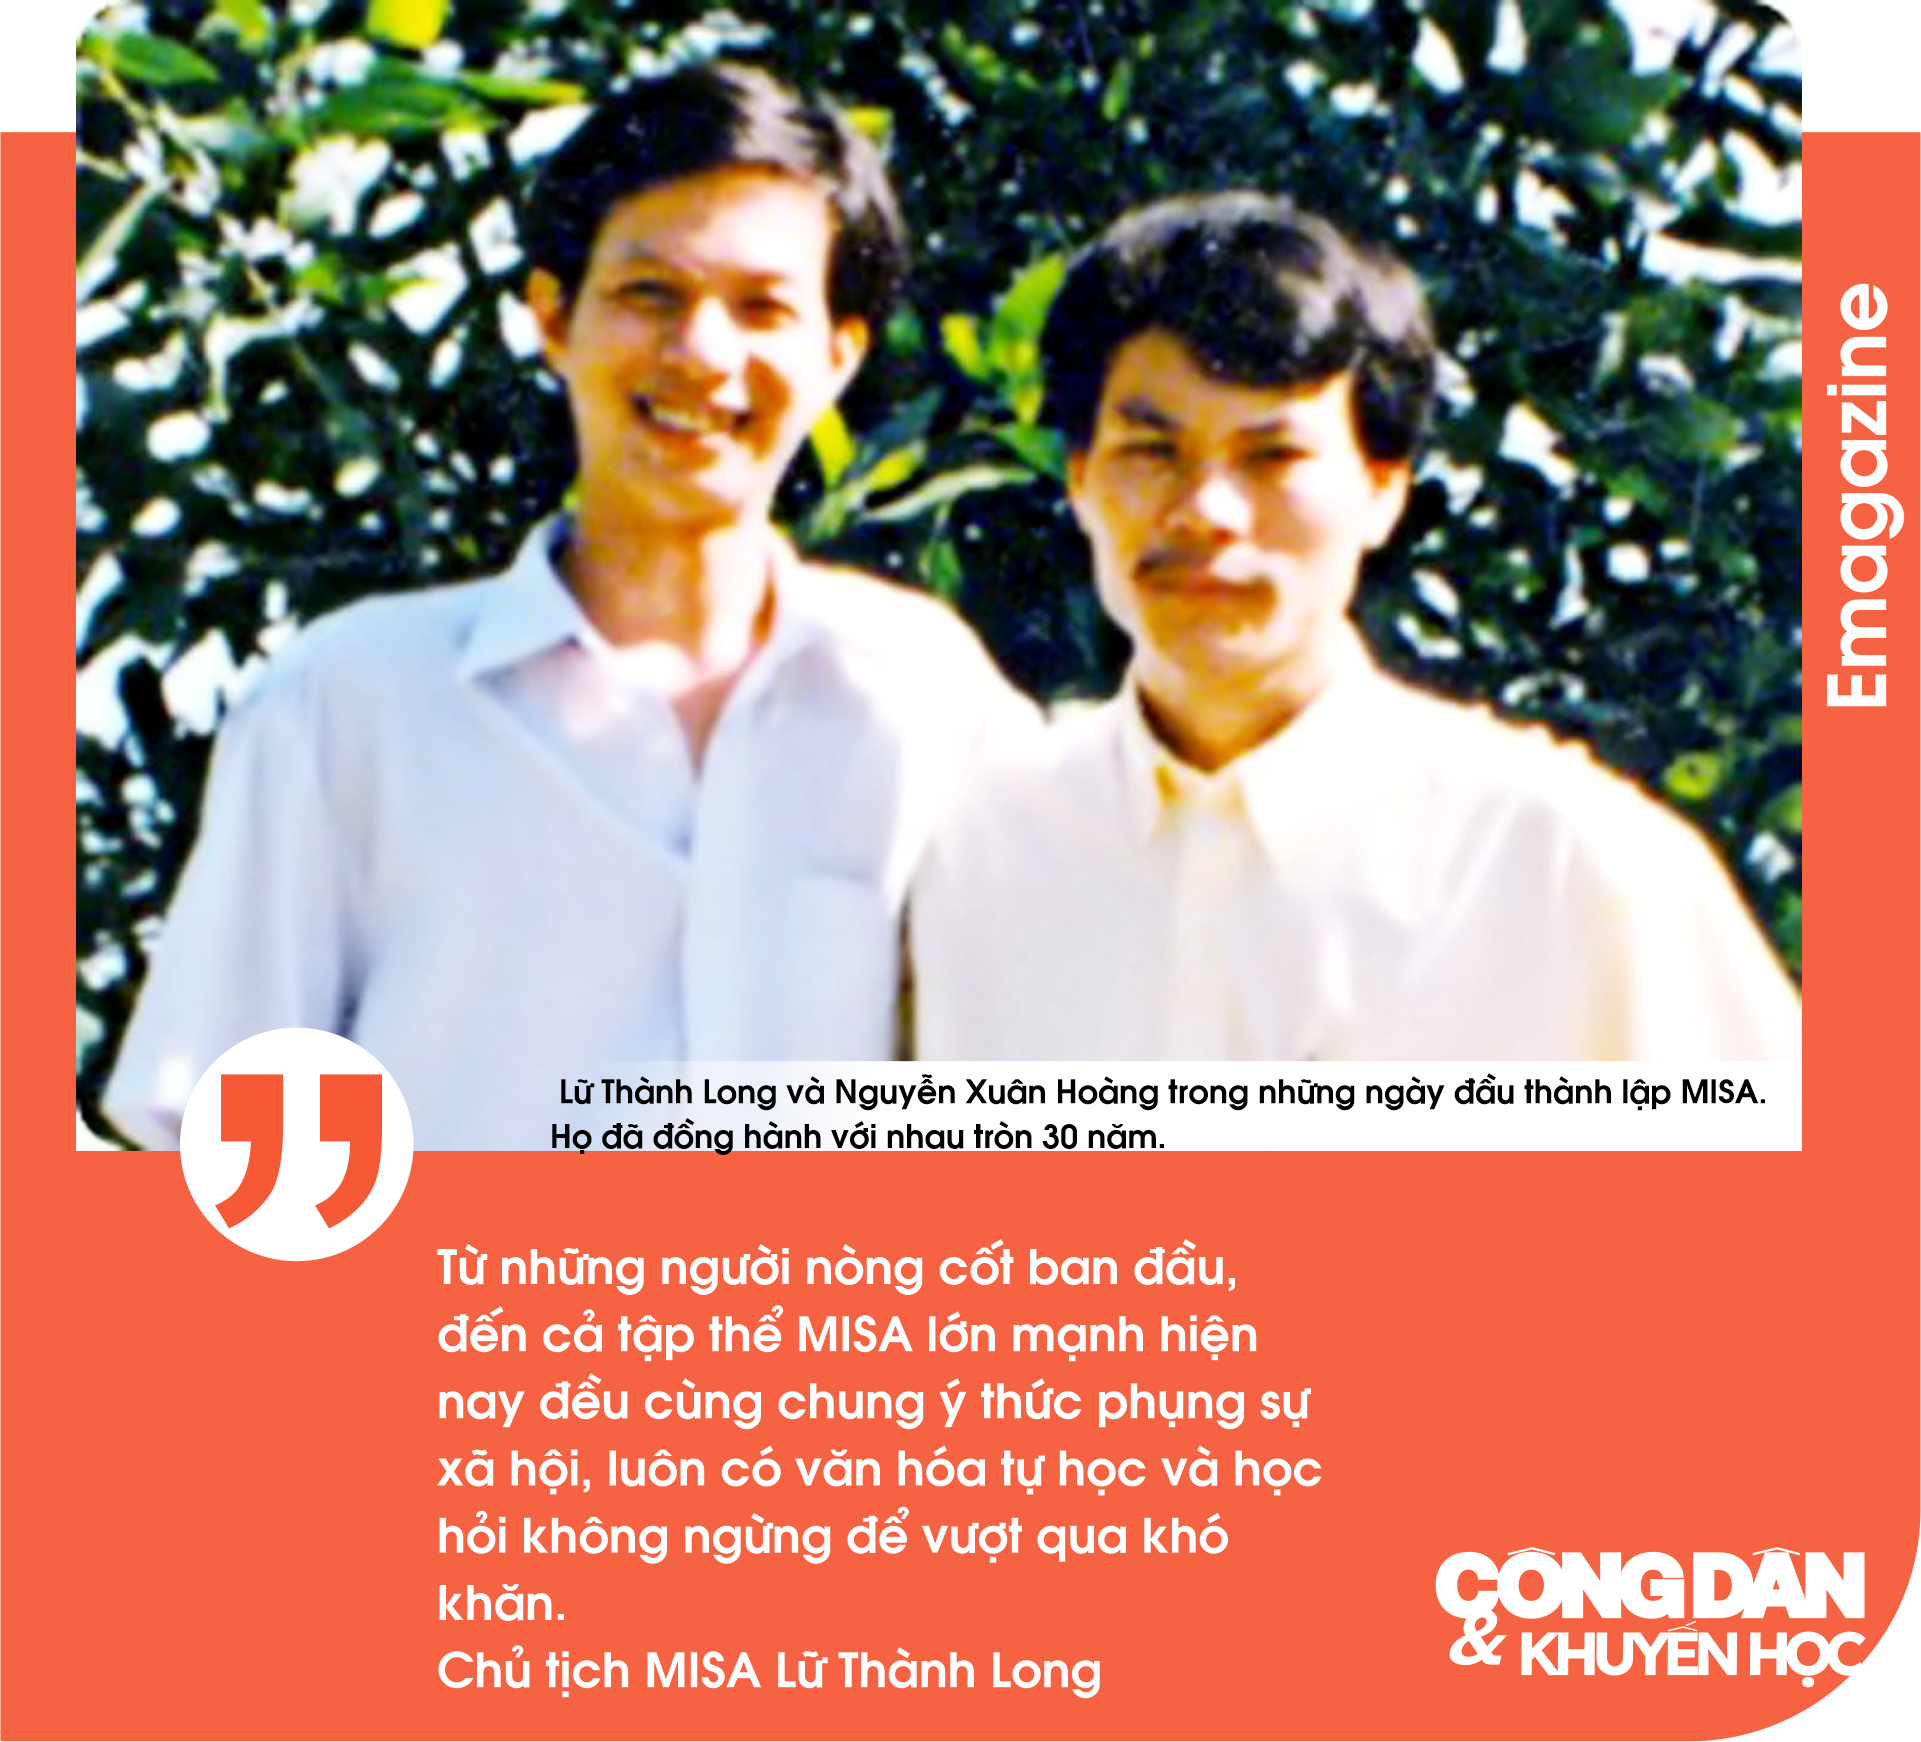 Chủ tịch MISA Lữ Thành Long:
NGƯỜI MISA CÓ NỀN TẢNG VĂN HÓA ĐỂ SỐNG VÀ PHỤNG SỰ!- Ảnh 8.